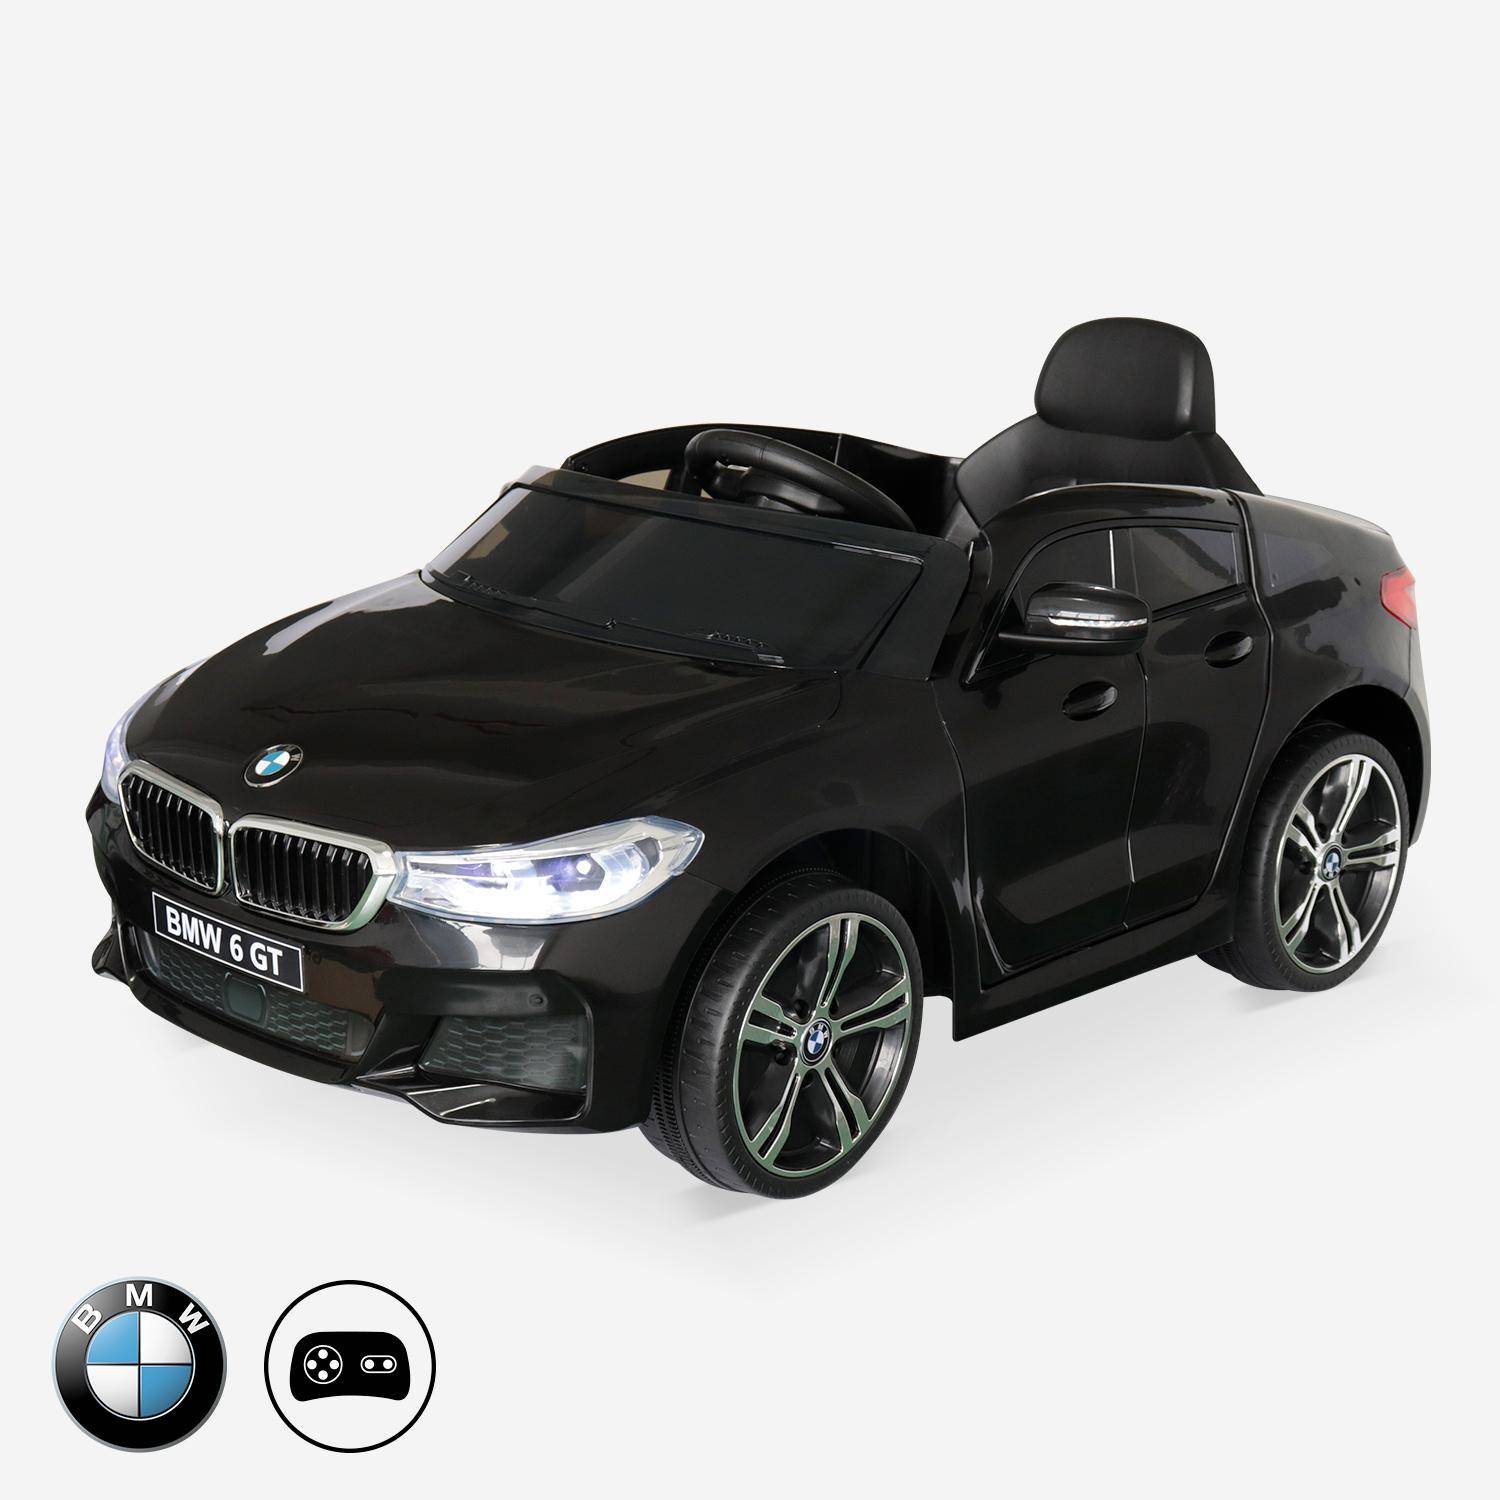 BMW Serie 6 GT Gran Turismo nera, auto elettrica per bambini 12V 4 Ah, 1 posto, con autoradio e telecomando Photo1